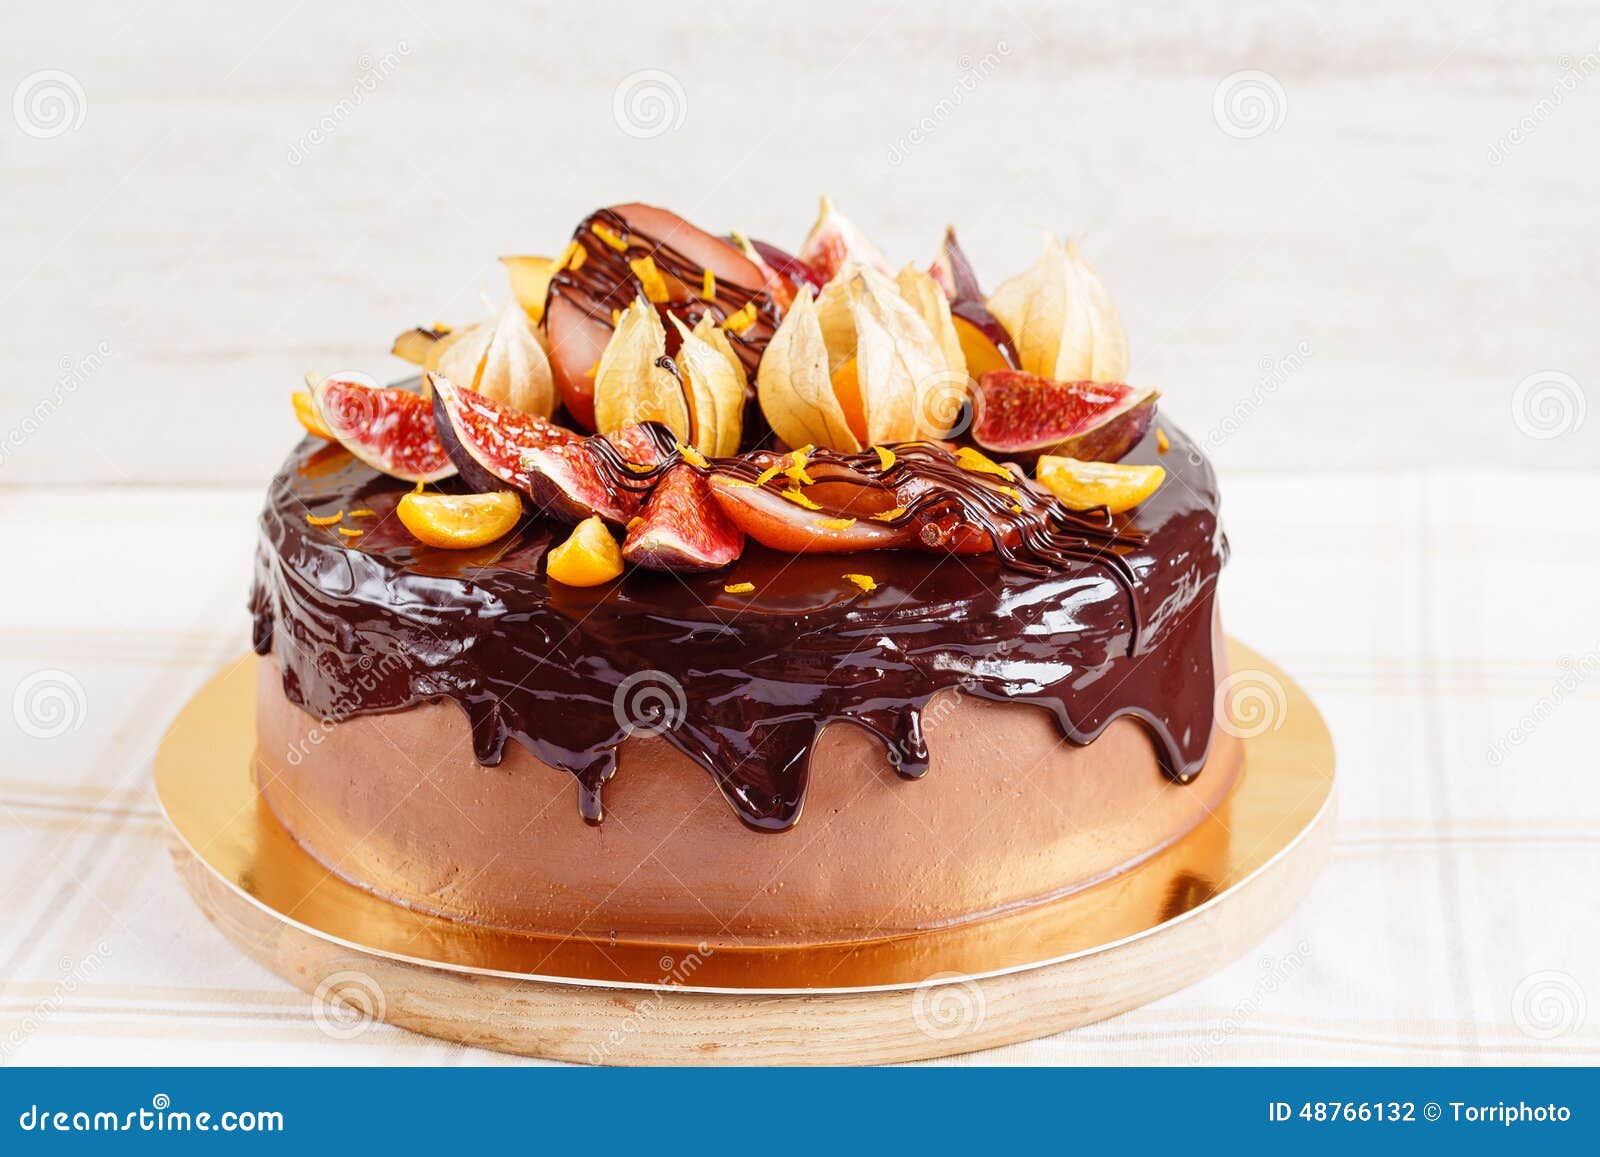 Autumn Chocolate Cake with Fruit and Glaze Stock Photo - Image of ...